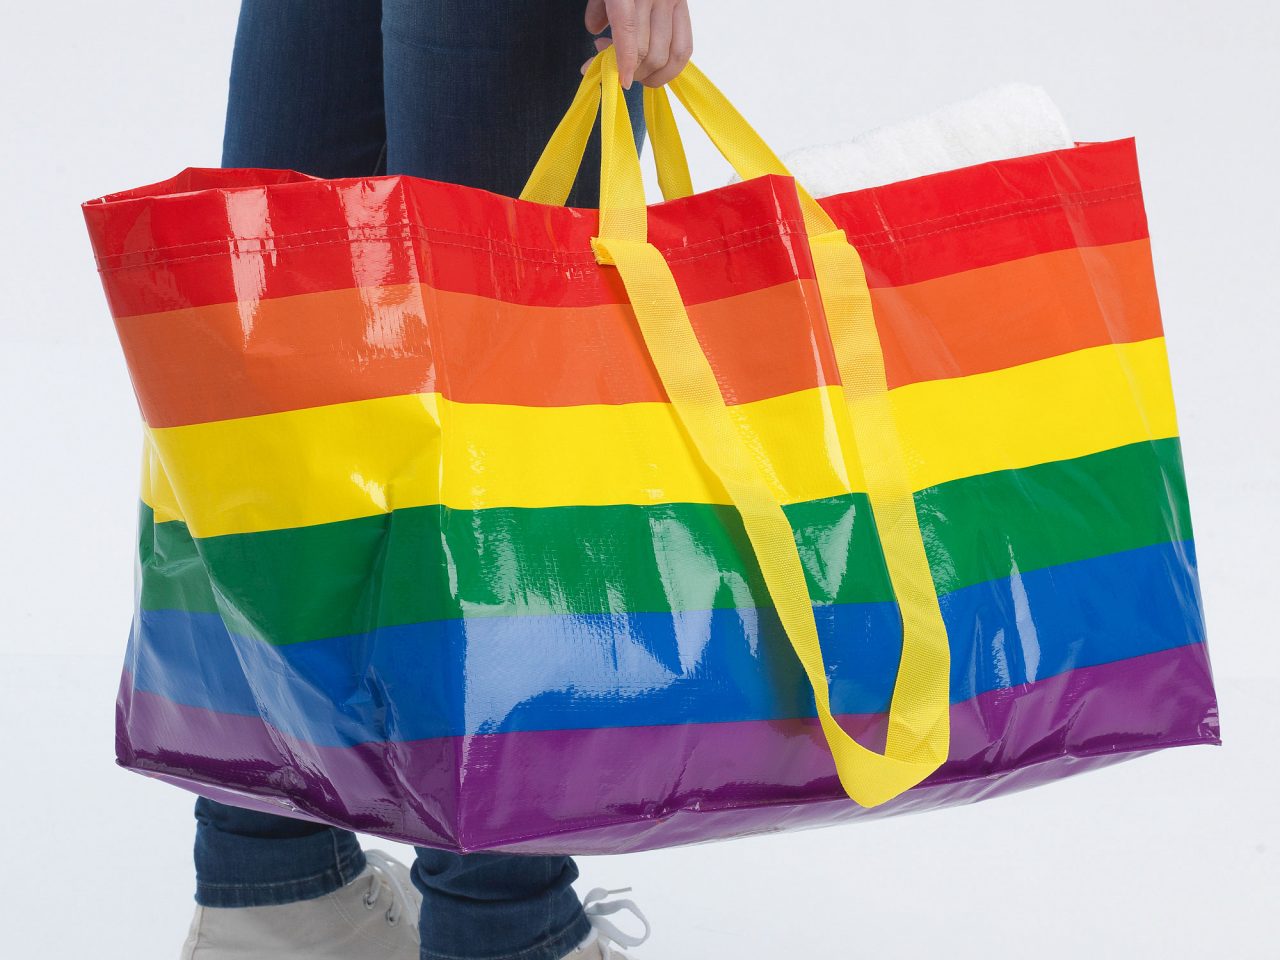 Una persona sostiene una gran bolsa de mano con un estampado arcoíris; solo se ve la parte inferior de su cuerpo.